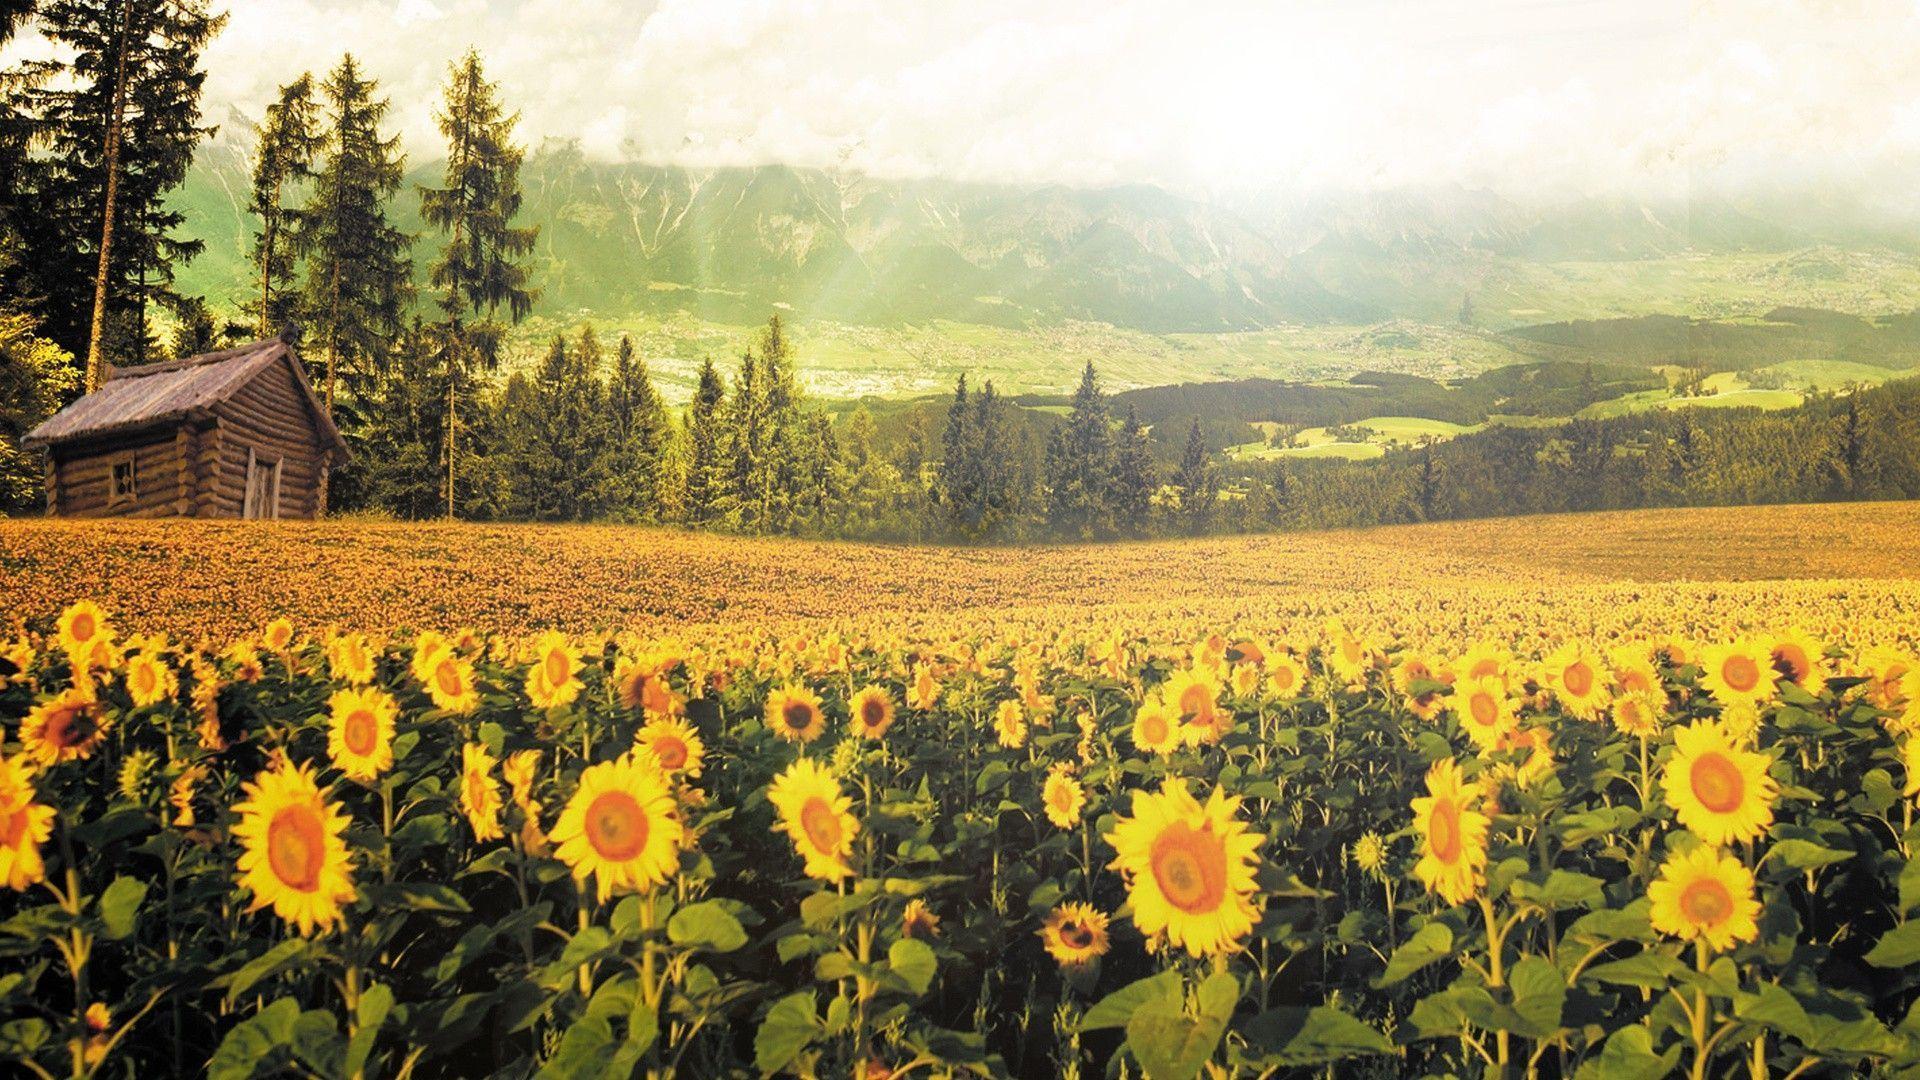 Sunflowers wallpapers mang lại cảm giác sảng khoái, tươi mới và năng động cho điện thoại của bạn. Đây là một loài hoa đẹp và mạnh mẽ nhất trong tự nhiên, đại diện cho sự nồng nhiệt, sự đam mê và sự thay đổi. Hãy thả mình vào những bức ảnh này để thấy rằng cuộc sống của mình được điều chỉnh đúng hướng.